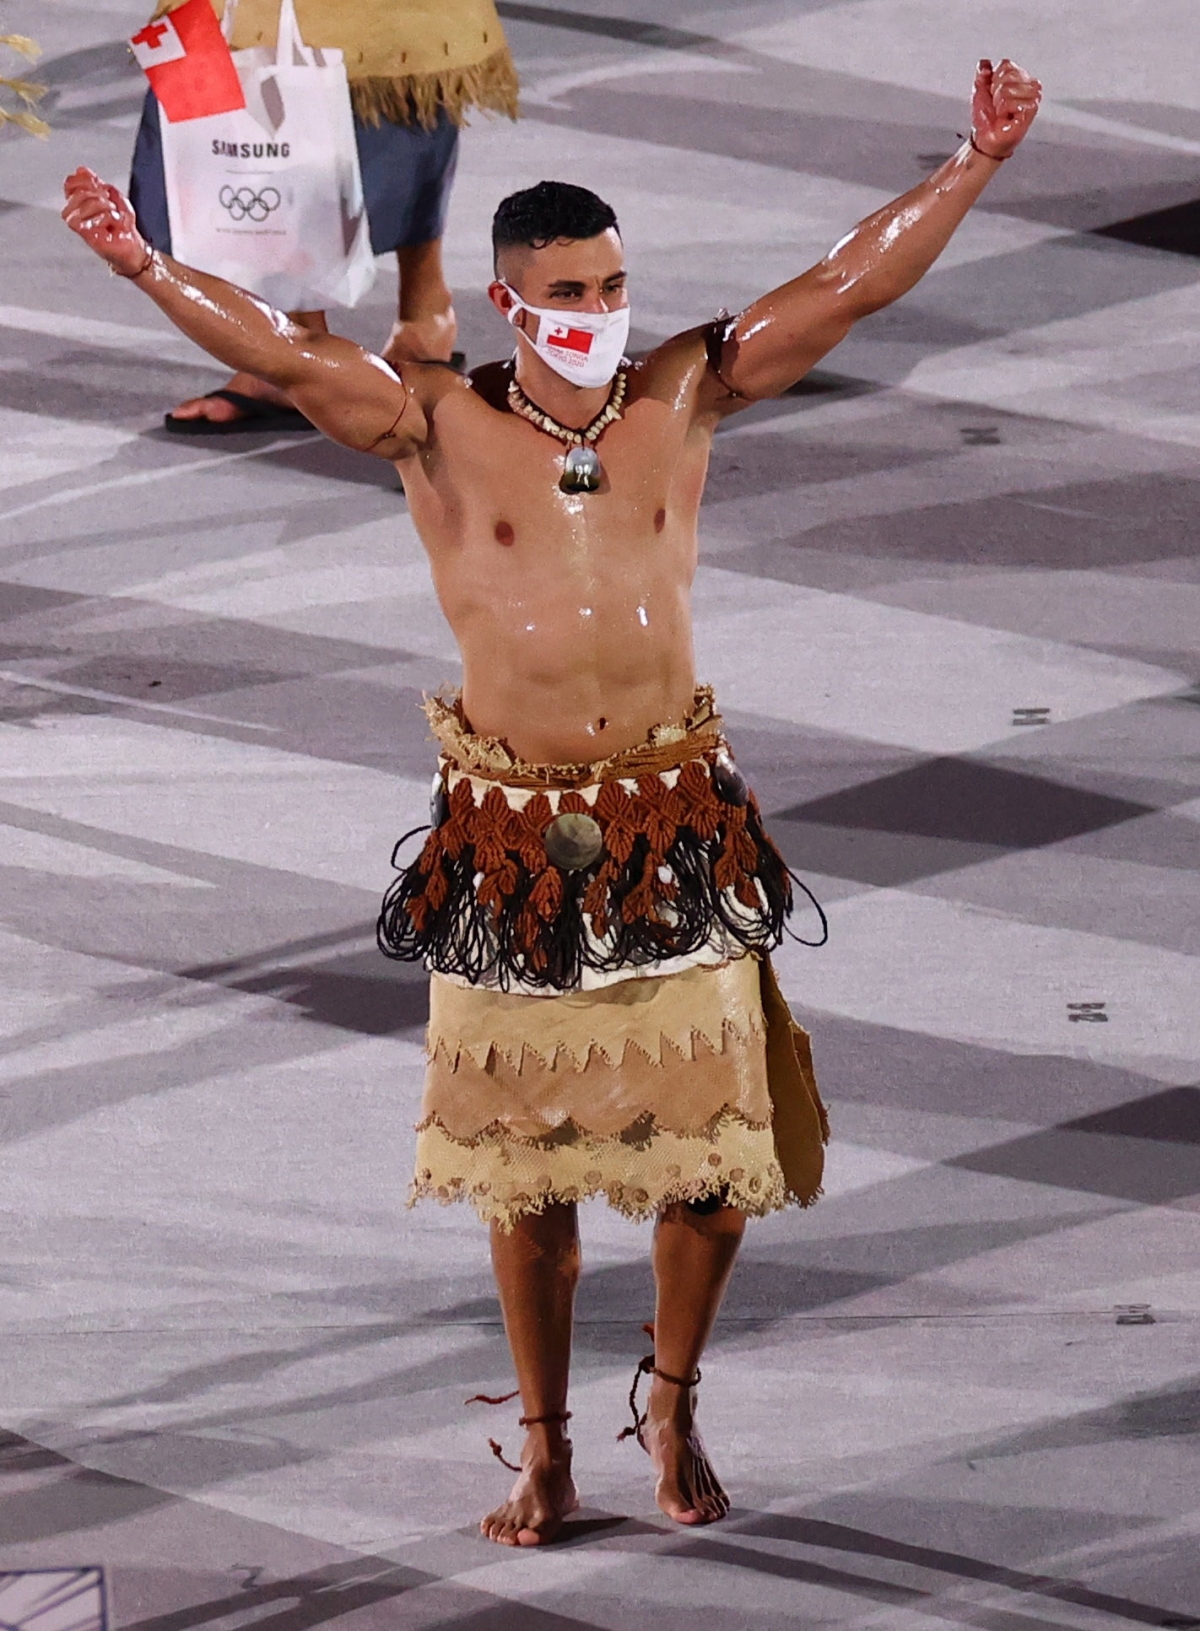 Võ sĩ cởi trần liên tiếp gây sốt ở lễ khai mạc Olympic - Ảnh 2.